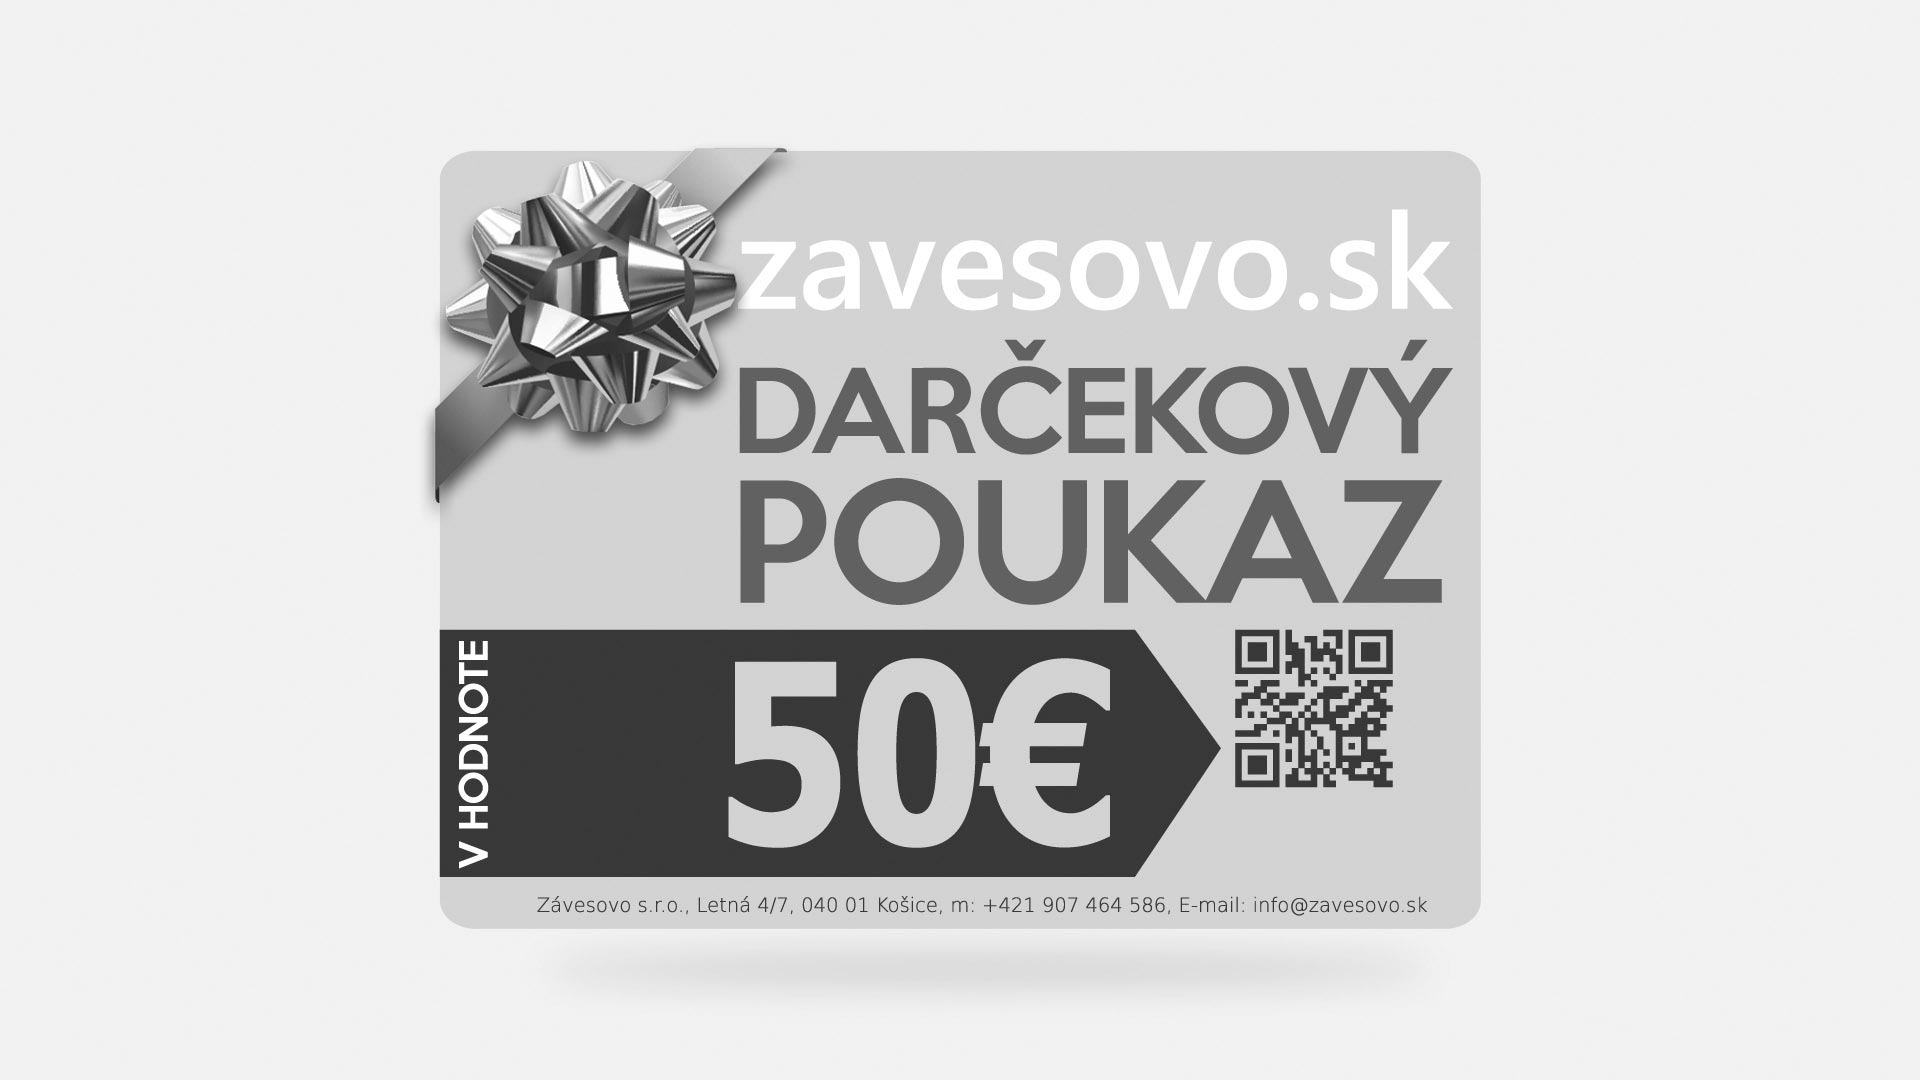 Darčekový poukaz v hodnote 50€ zavesovo.sk